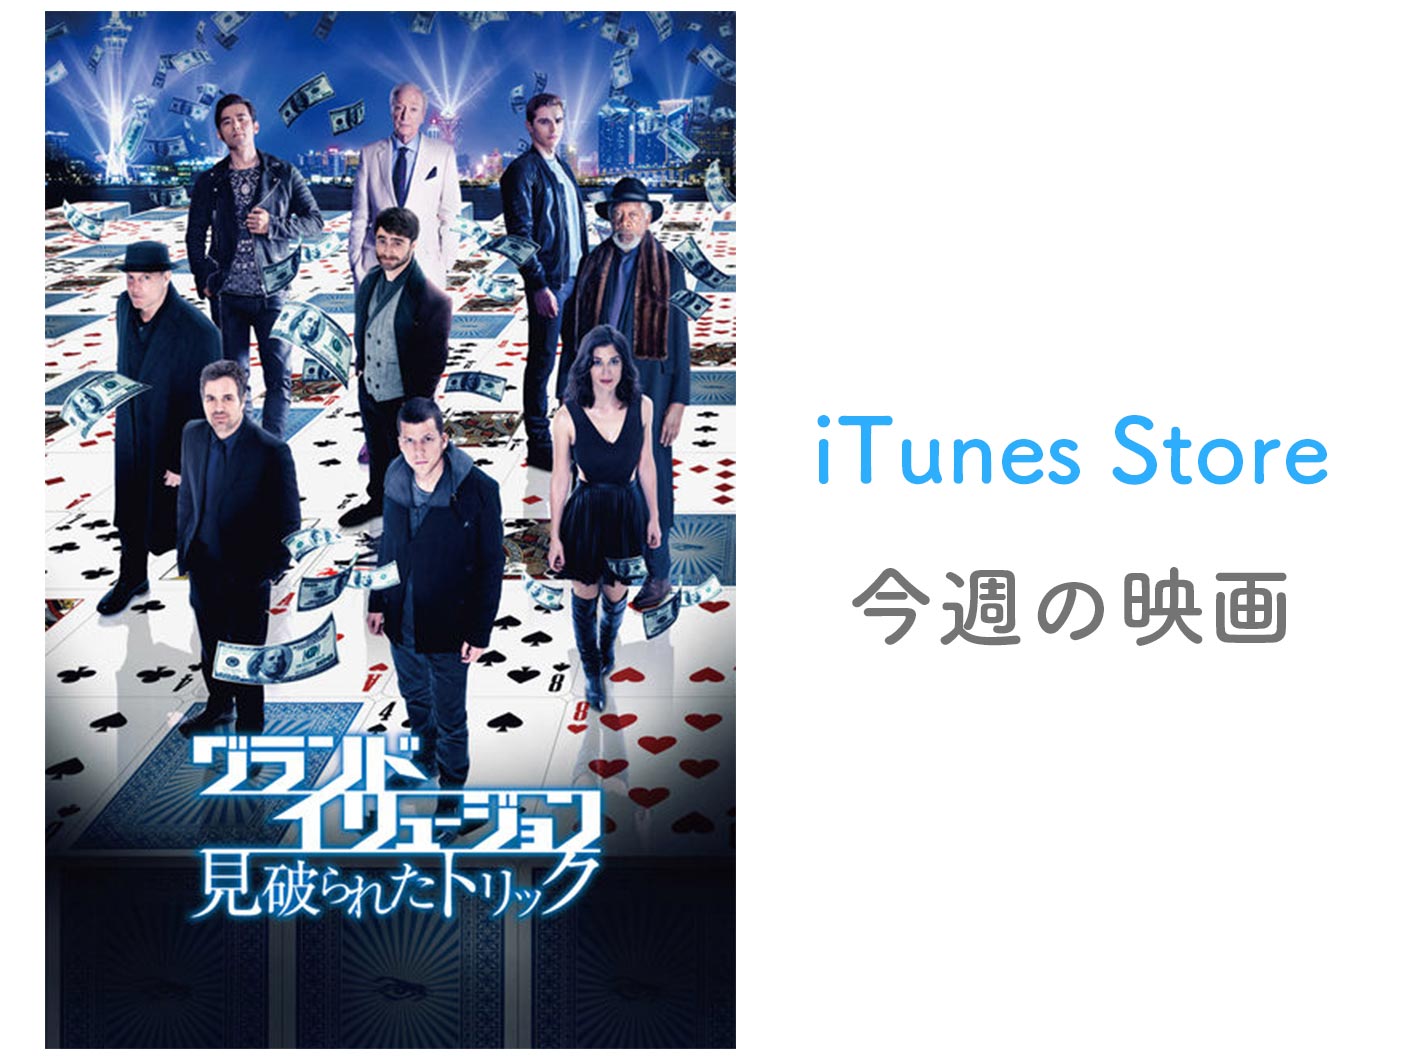 【レンタル100円】iTunes Store、「今週の映画」として「グランド・イリュージョン 見破られたトリック」をピックアップ